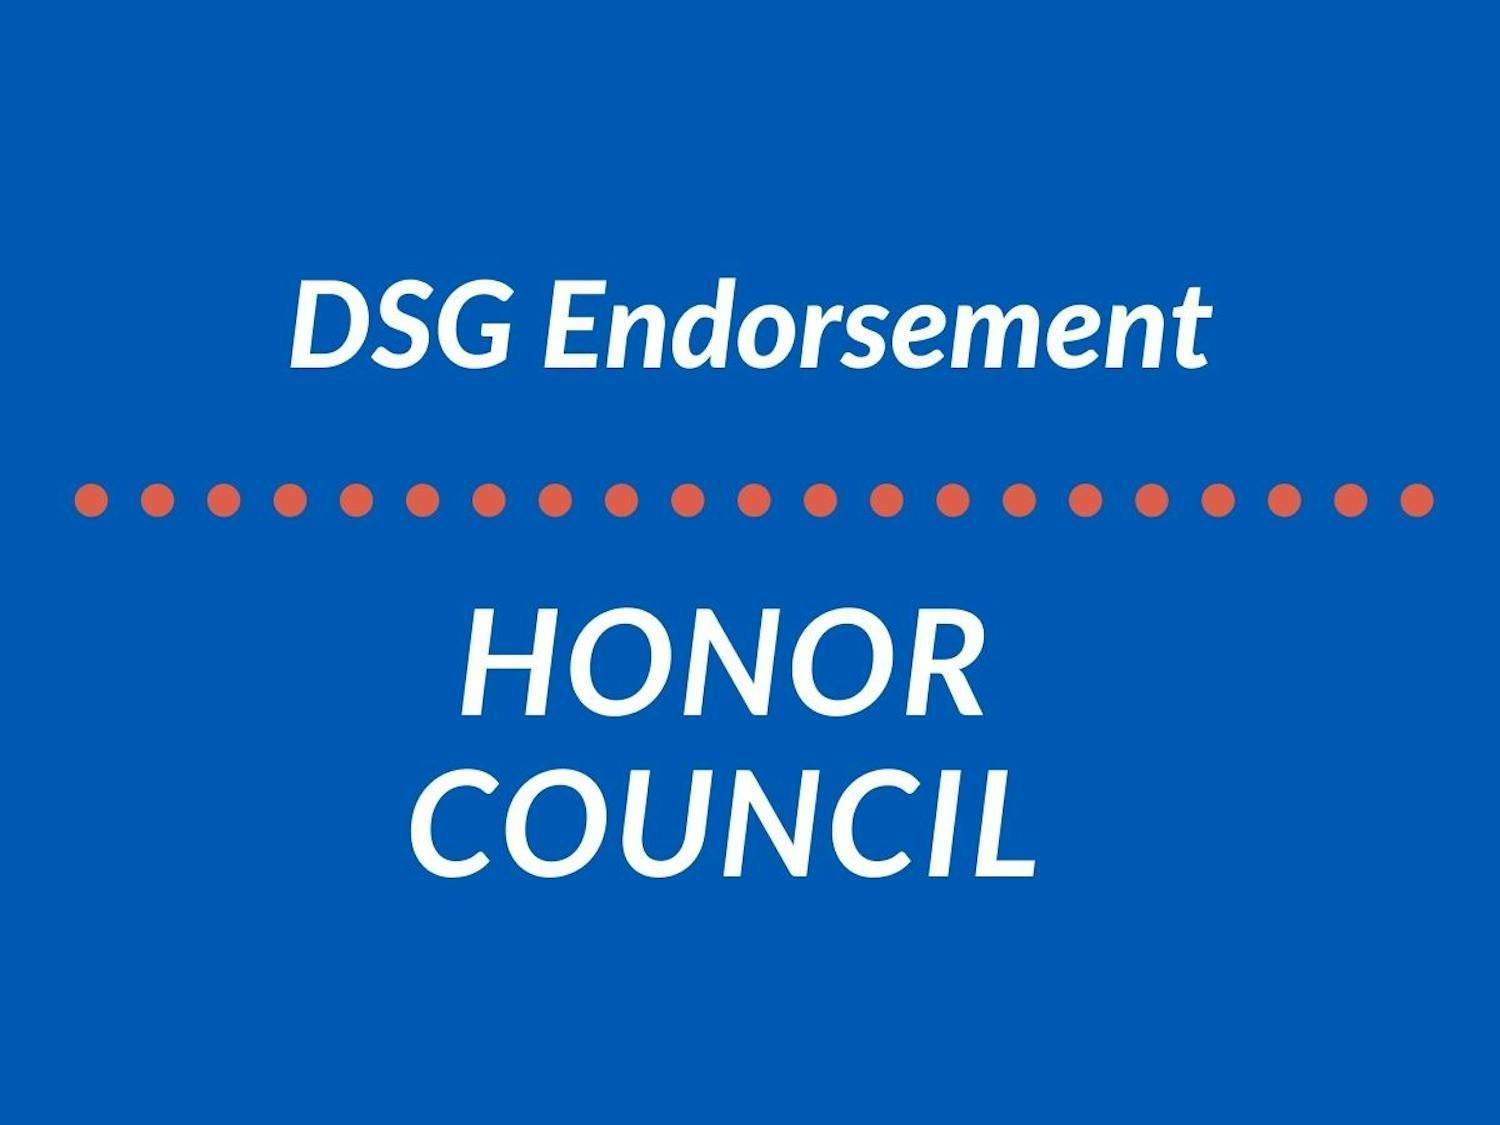 honor council ENDORSEMENT.jpg